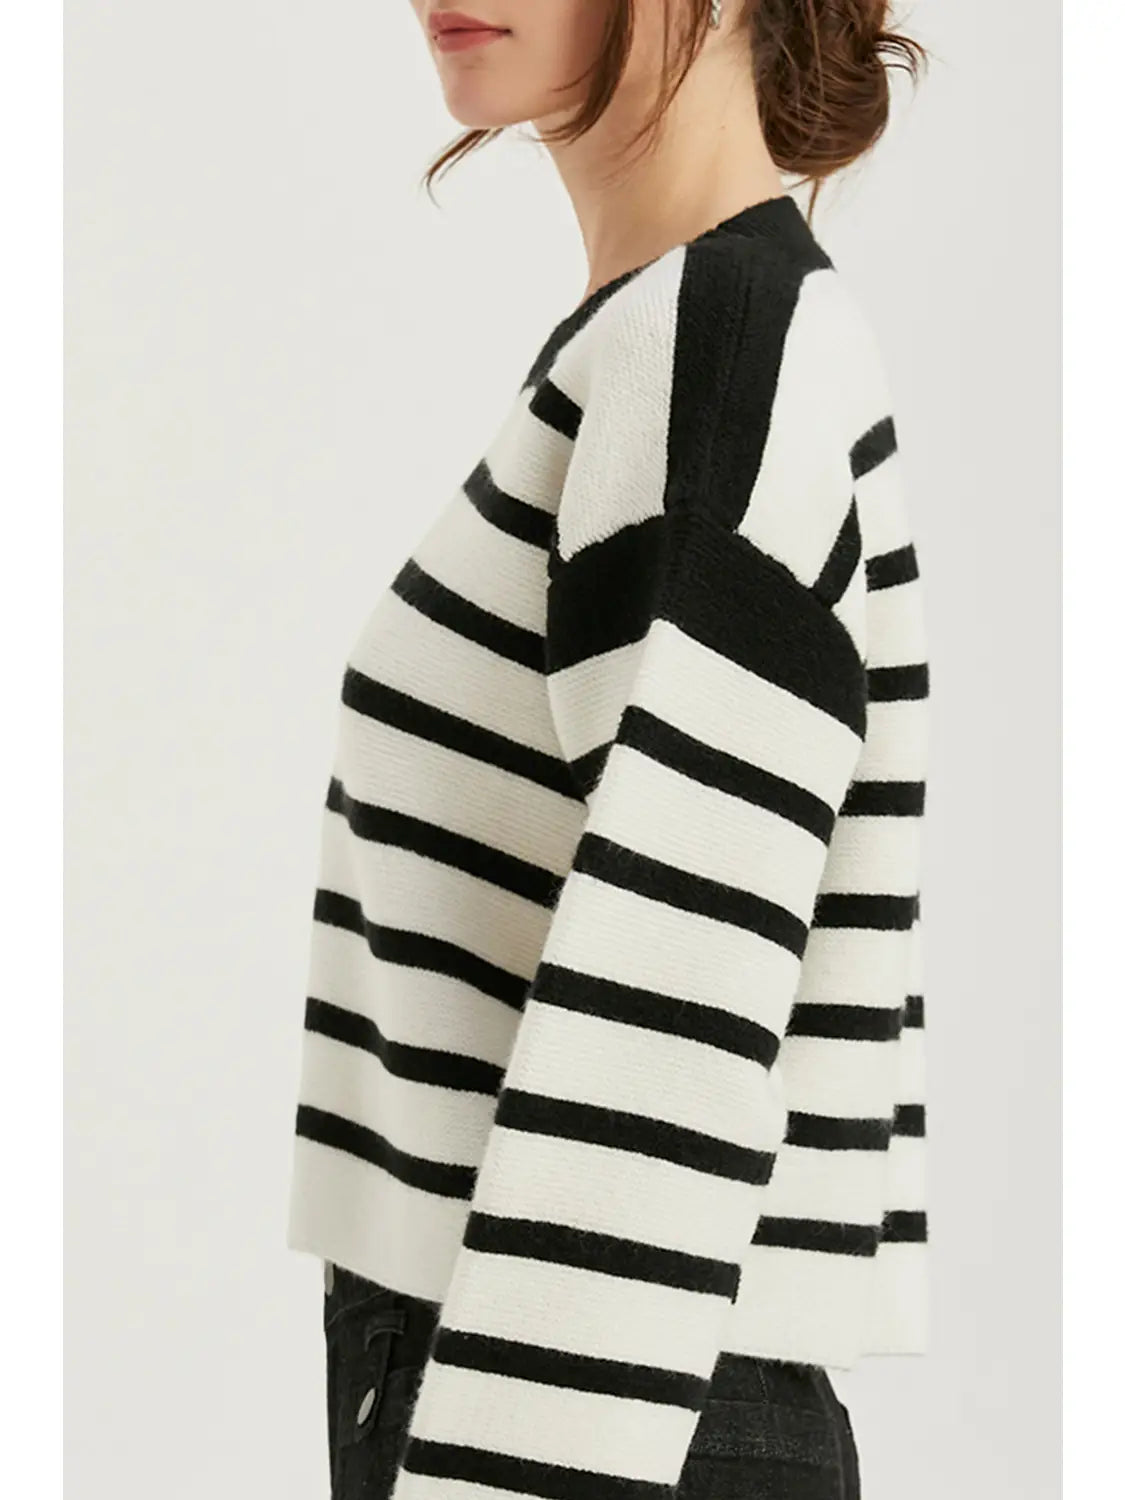 Bardot Striped Sweater